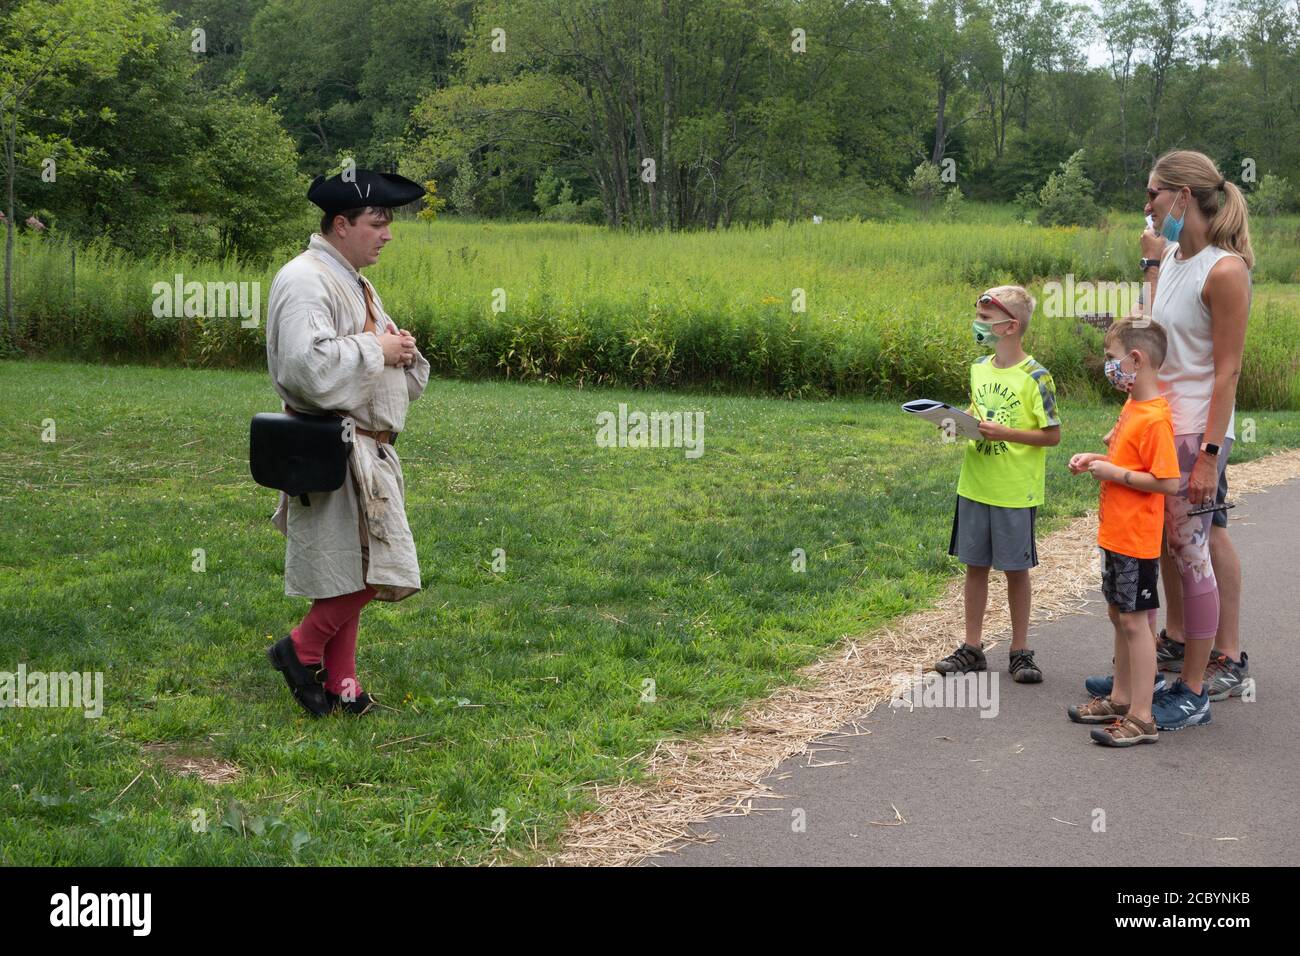 Un docent costumé éduque les visiteurs au champ de bataille national de fort nécessité, Farmington, Pennsylvanie, États-Unis Banque D'Images